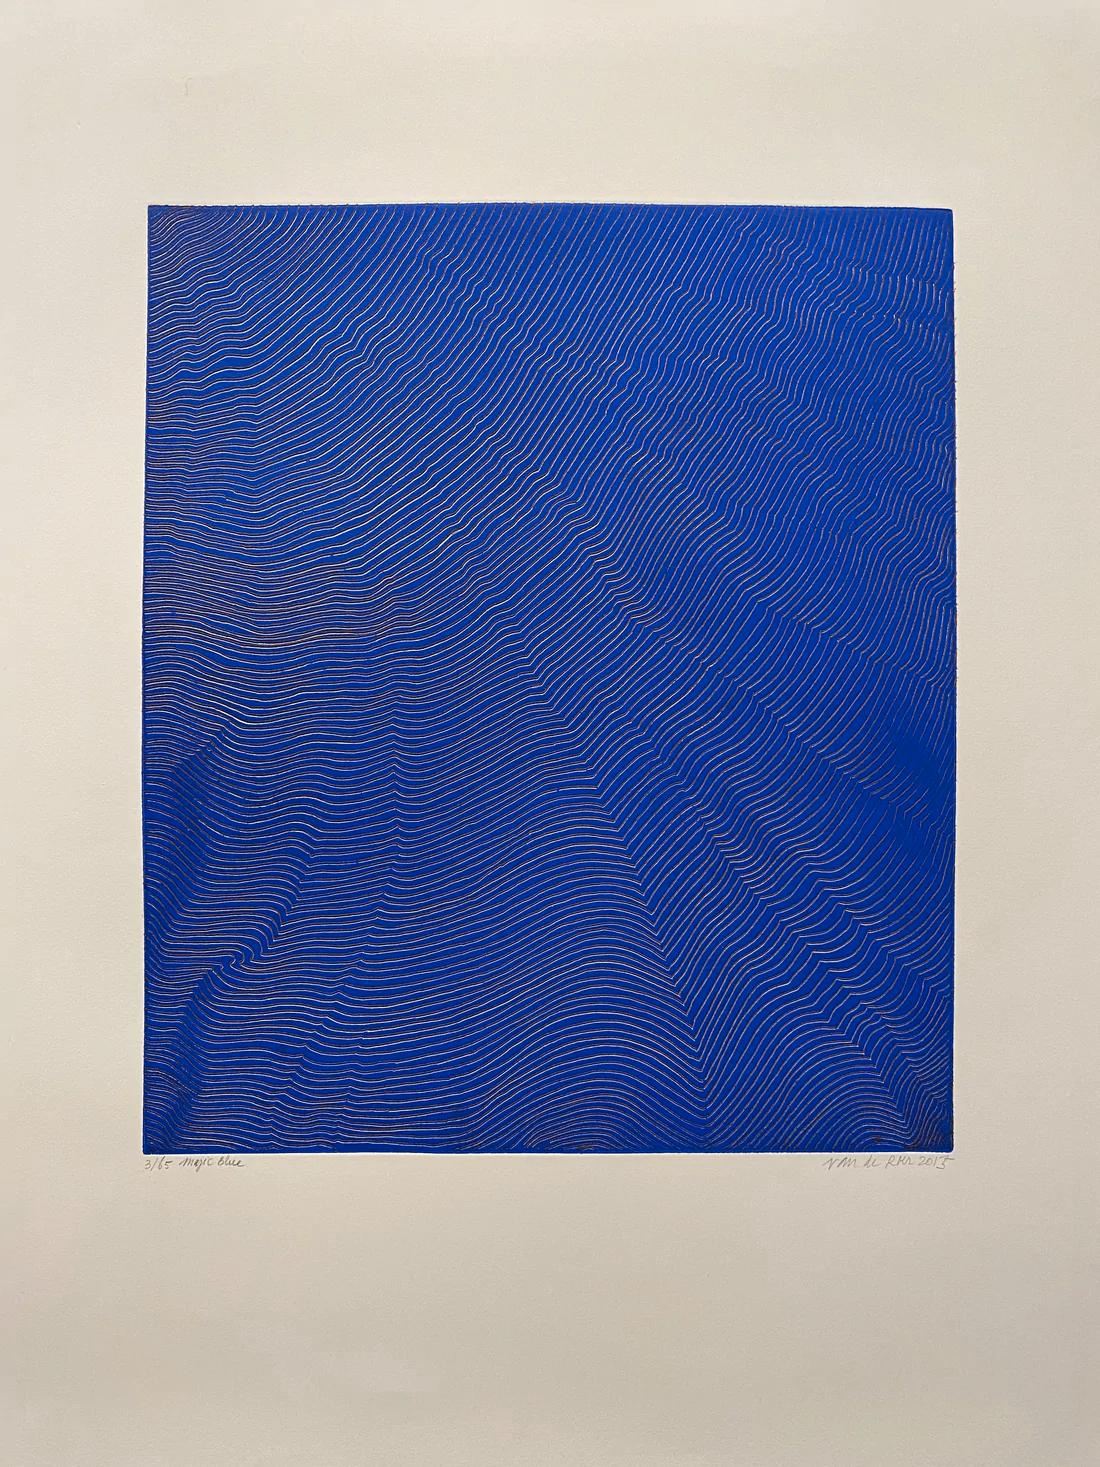 Magic Blue von Michele van de Roer, 2015 – Print von Michele Van De Roer